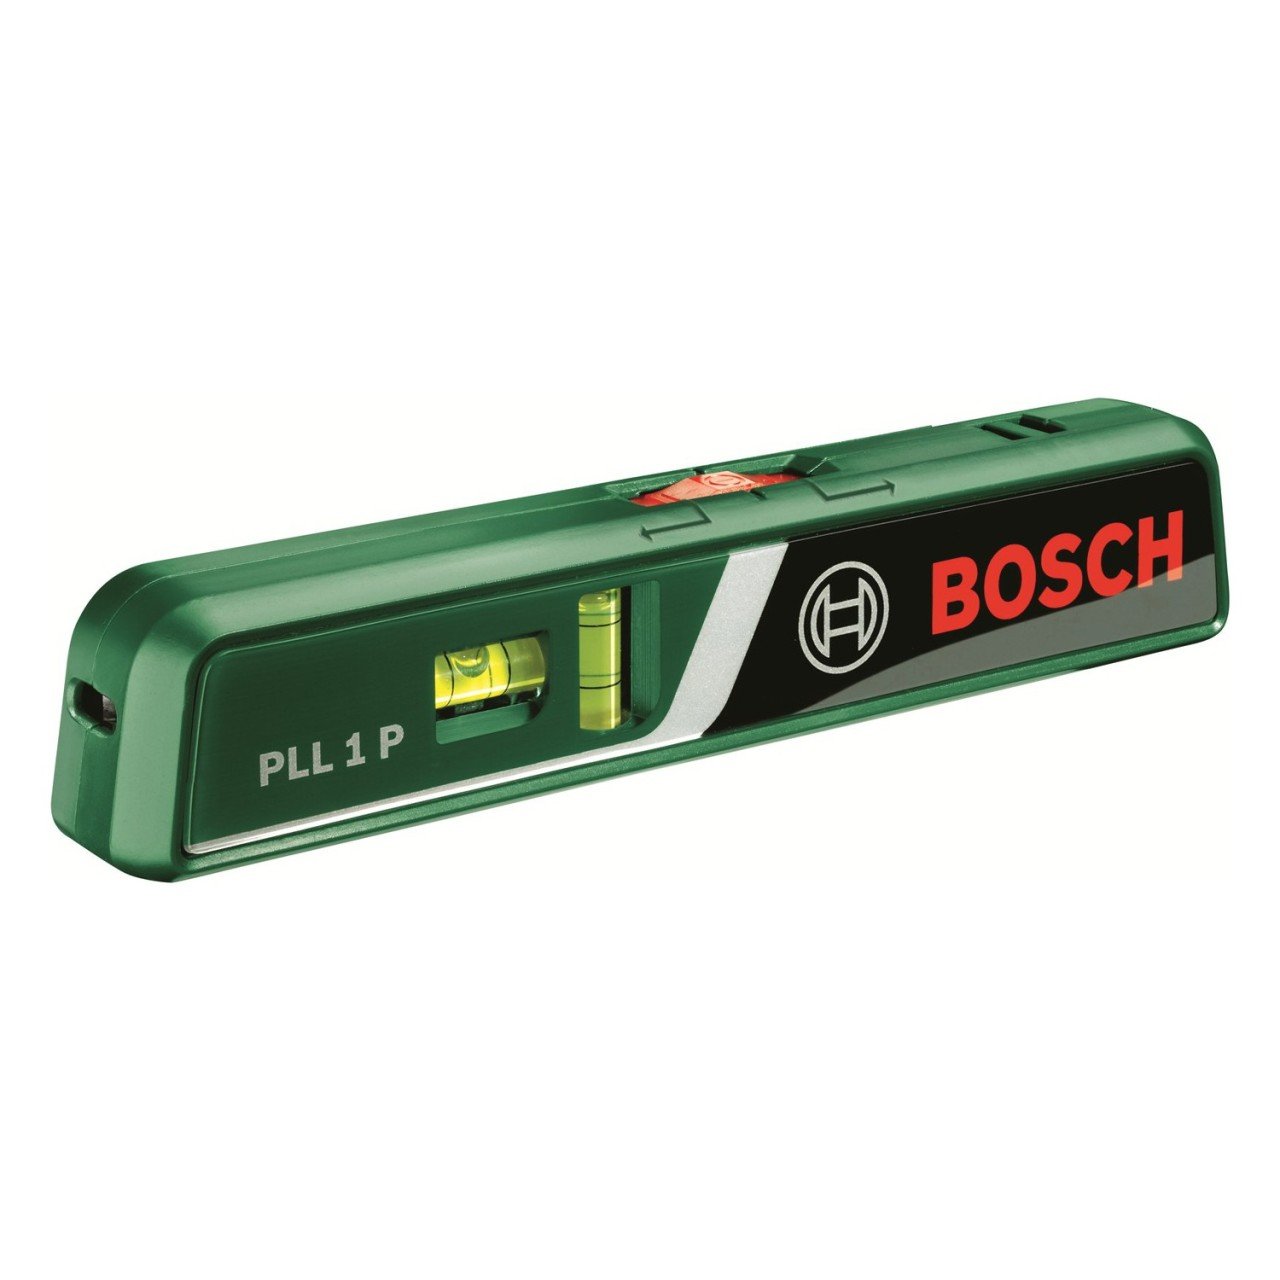 Bosch Pll 1 P Lazer Kalemi